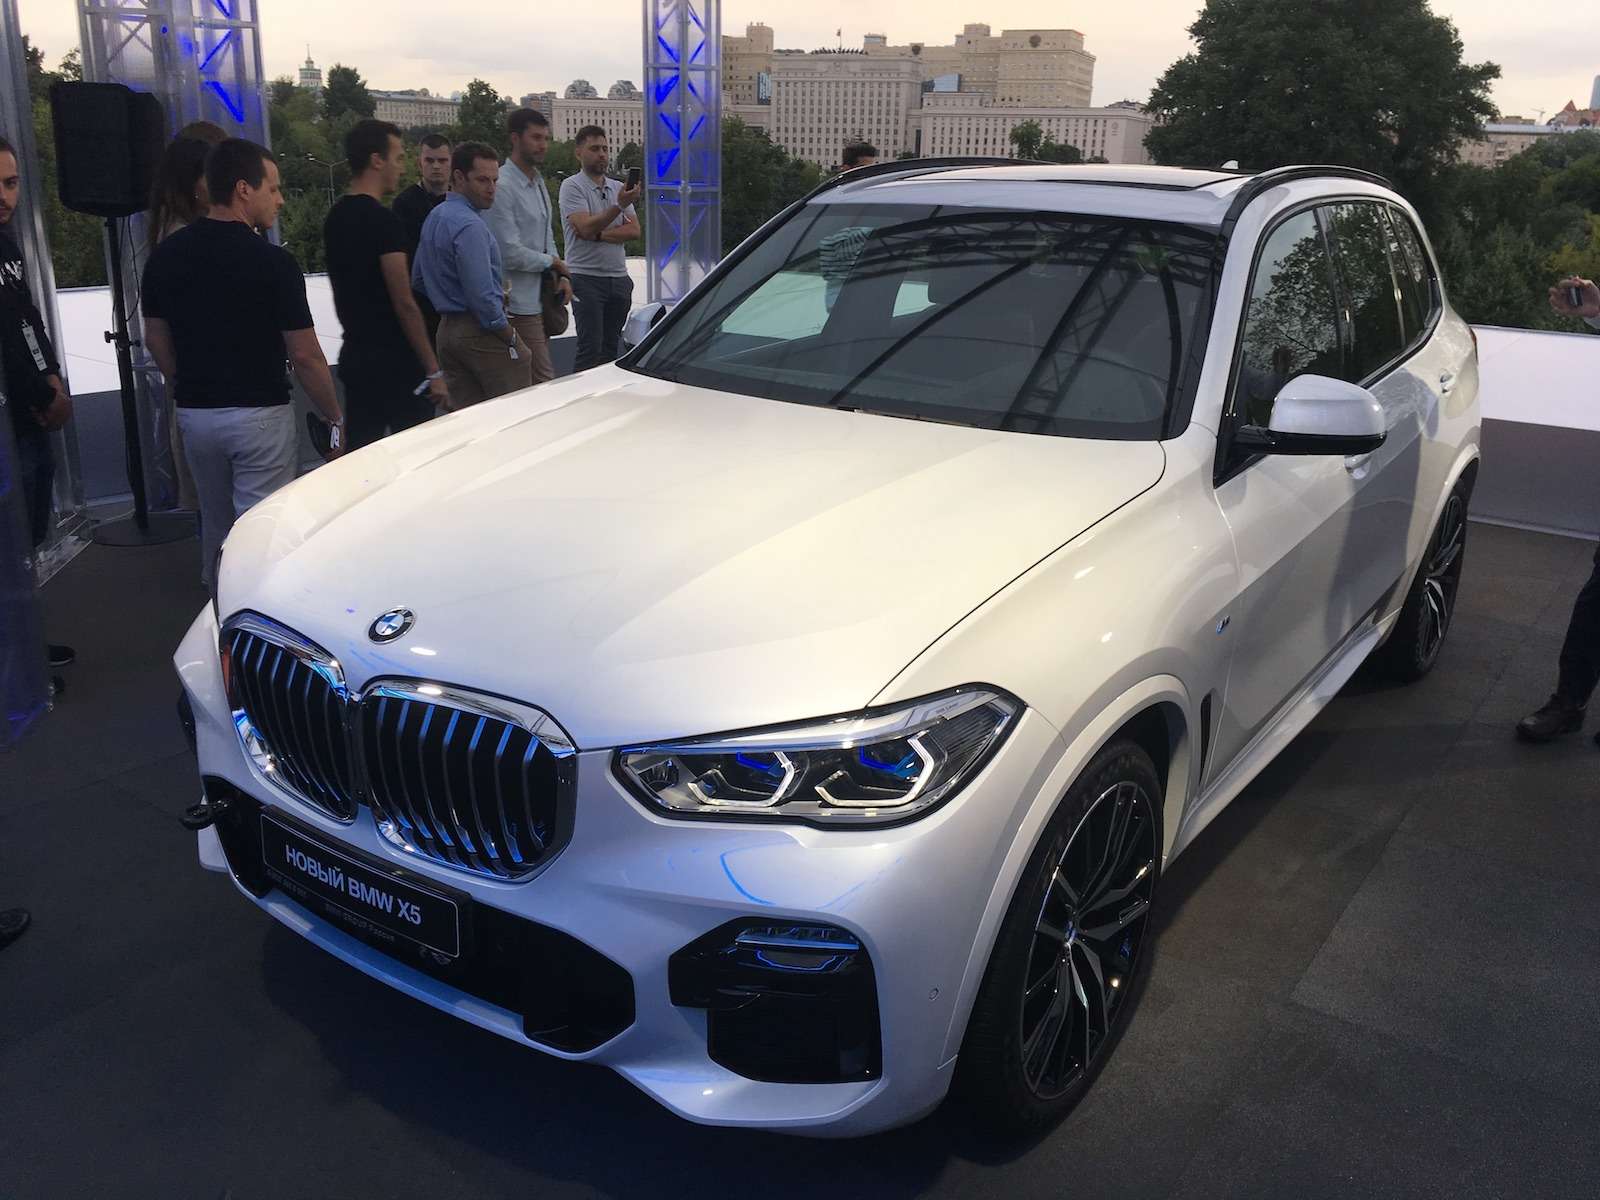 Абсолютно новый BMW X5 всплыл в Москве. Задолго до официальной премьеры! — фото 889842